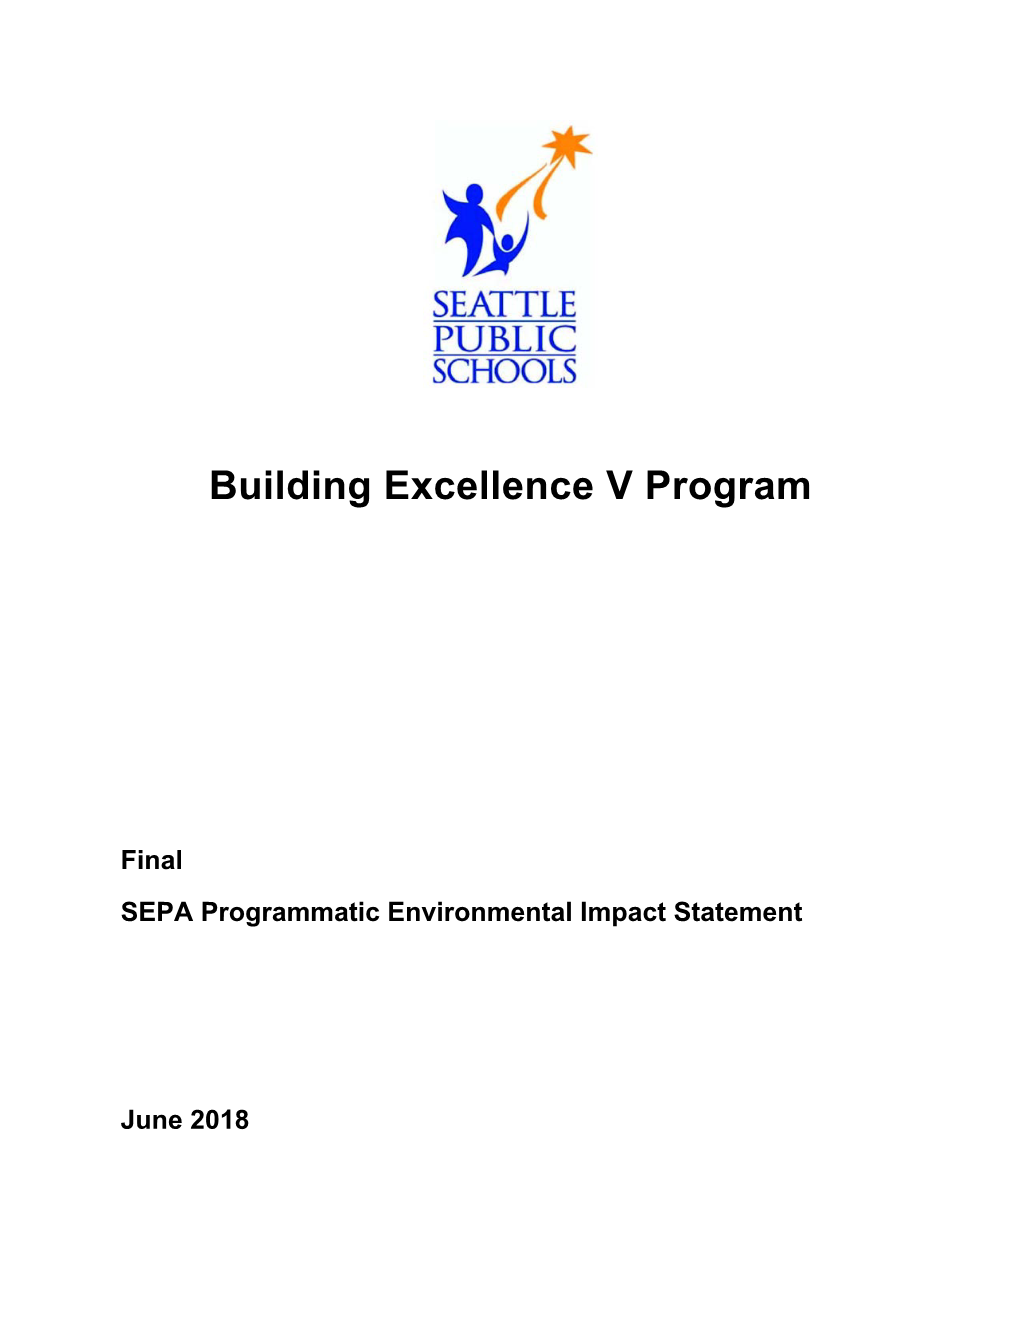 Final Programmatic EIS for BEX V Program